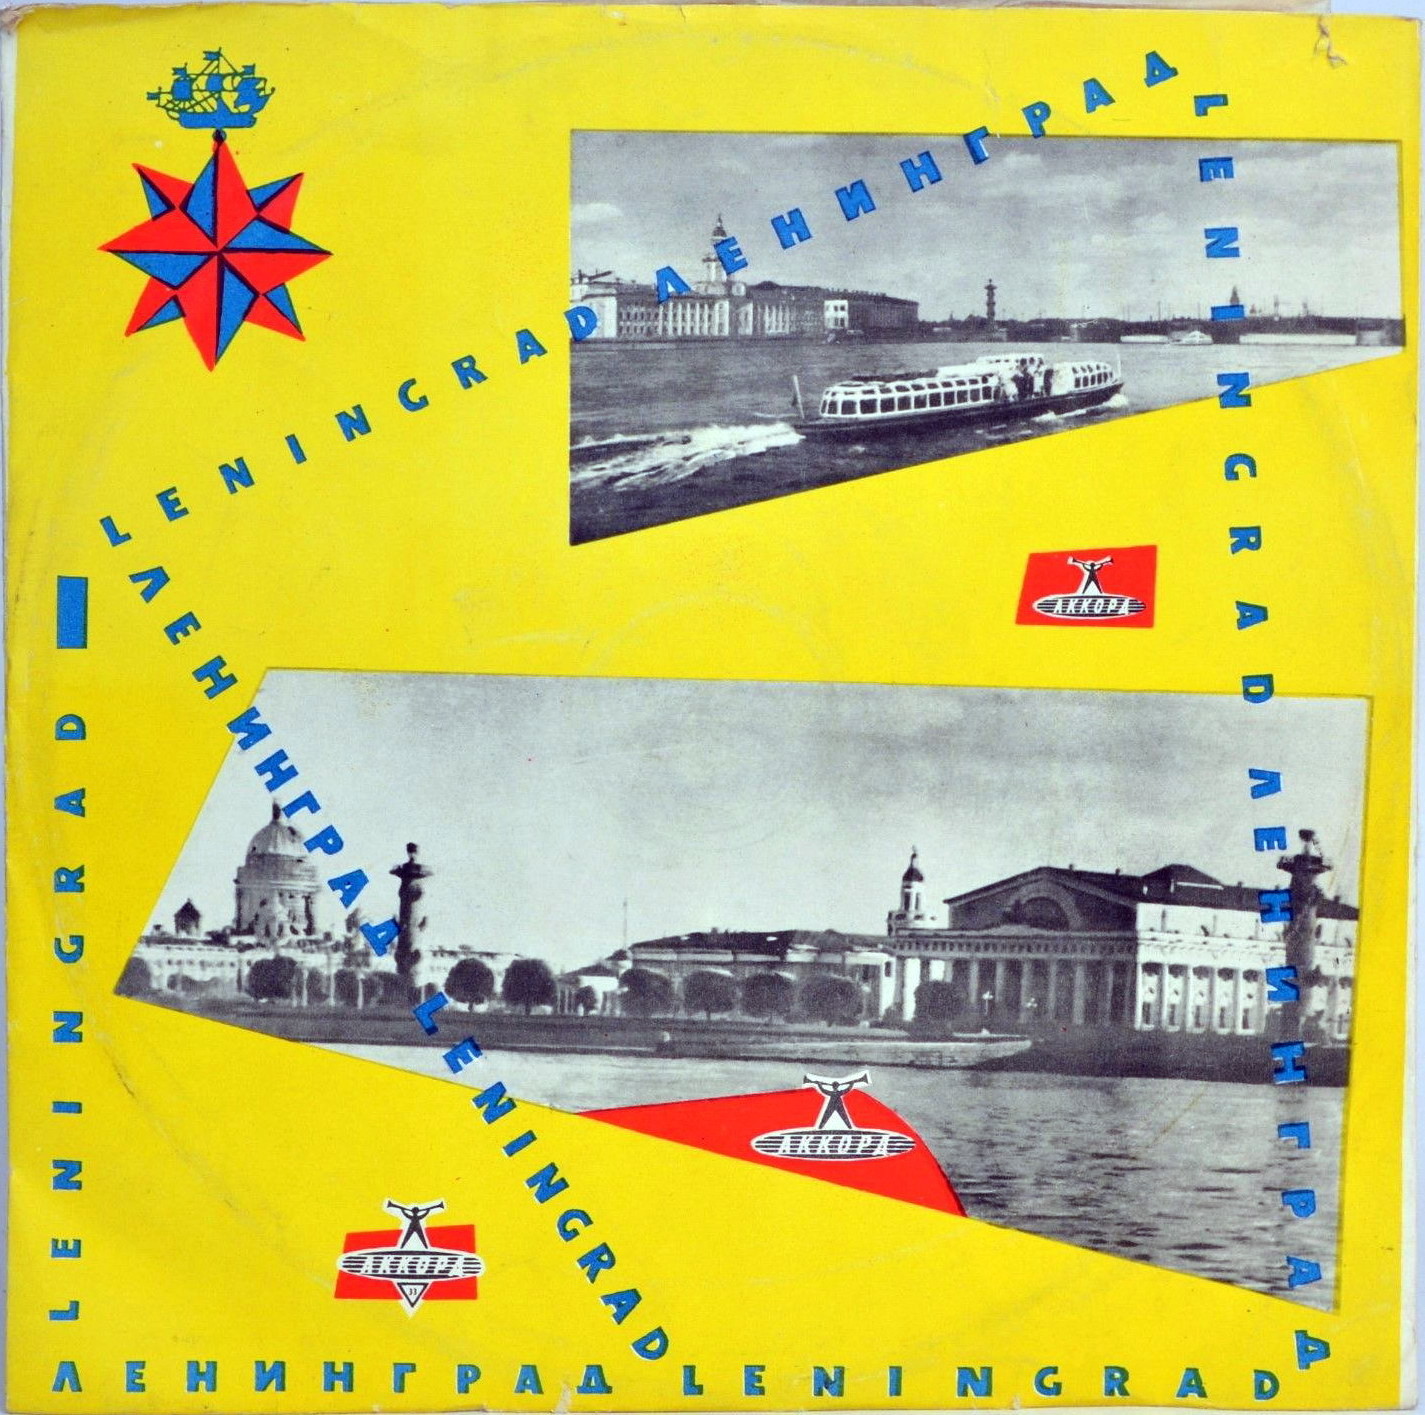 33. Ленинград. Leningrad